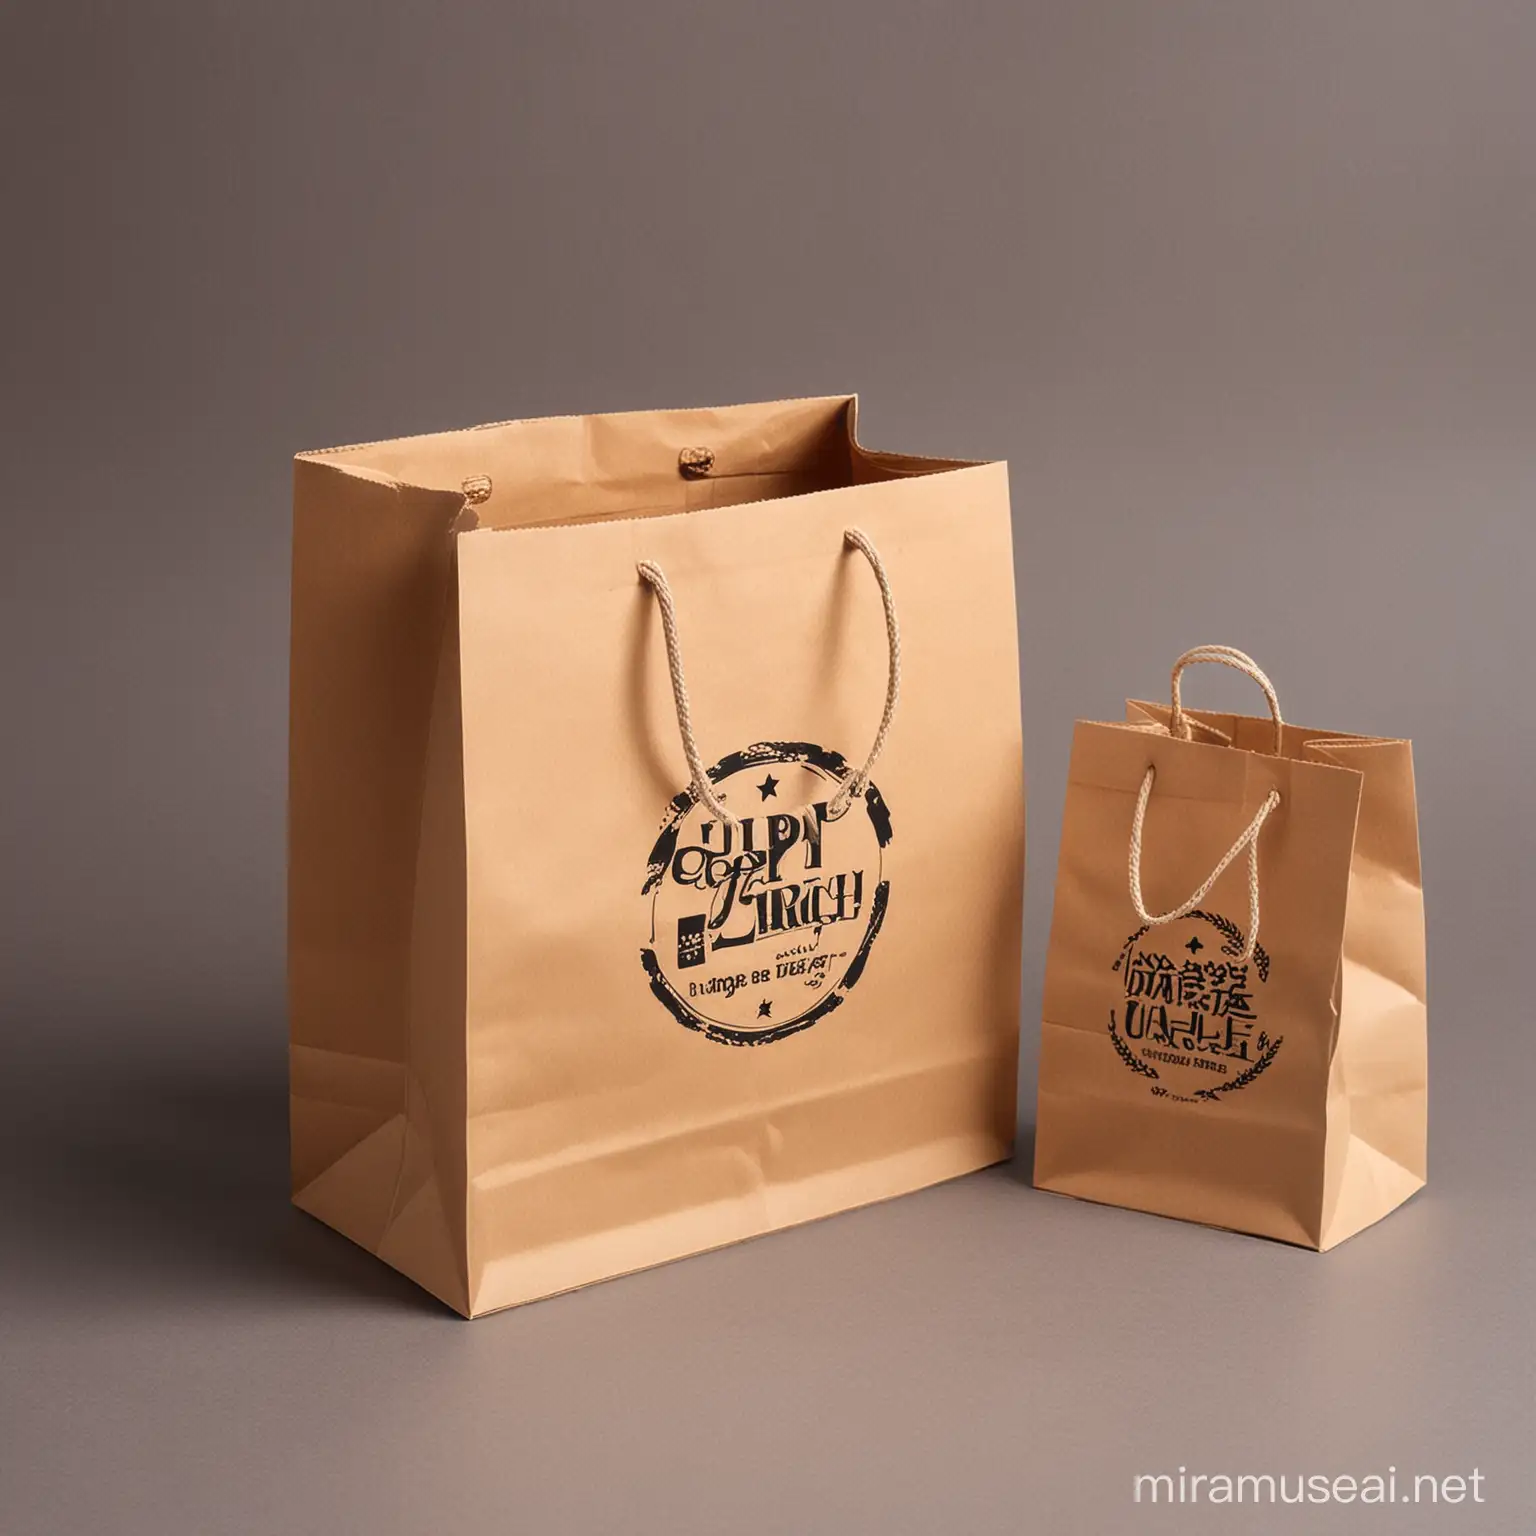 Creative Paper Bag Box and Printing Design